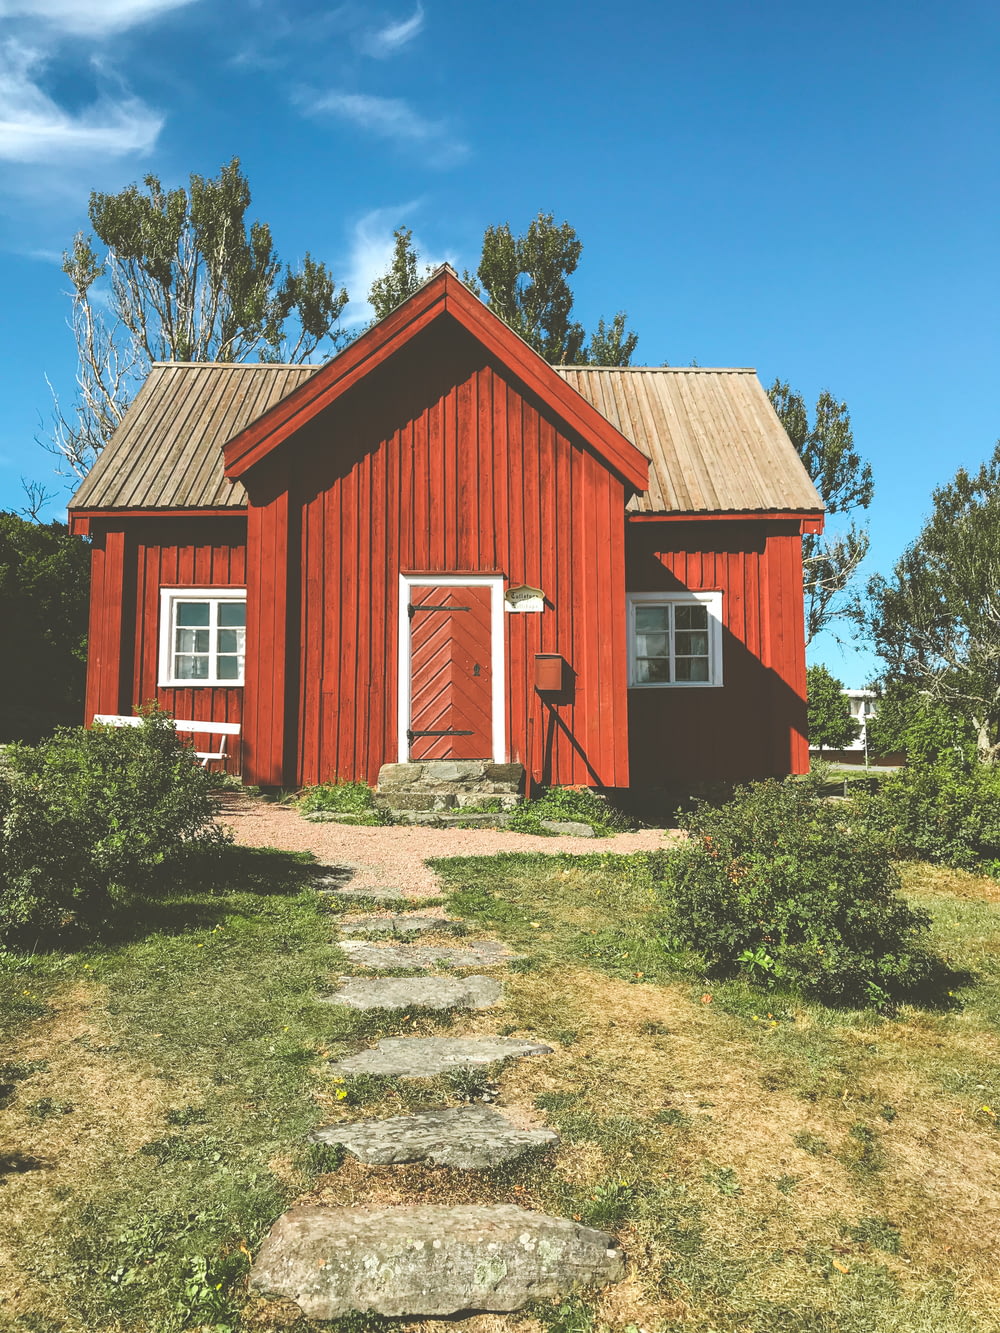 rot-weißes Holzhaus in der Nähe von grünen Bäumen unter blauem Himmel tagsüber